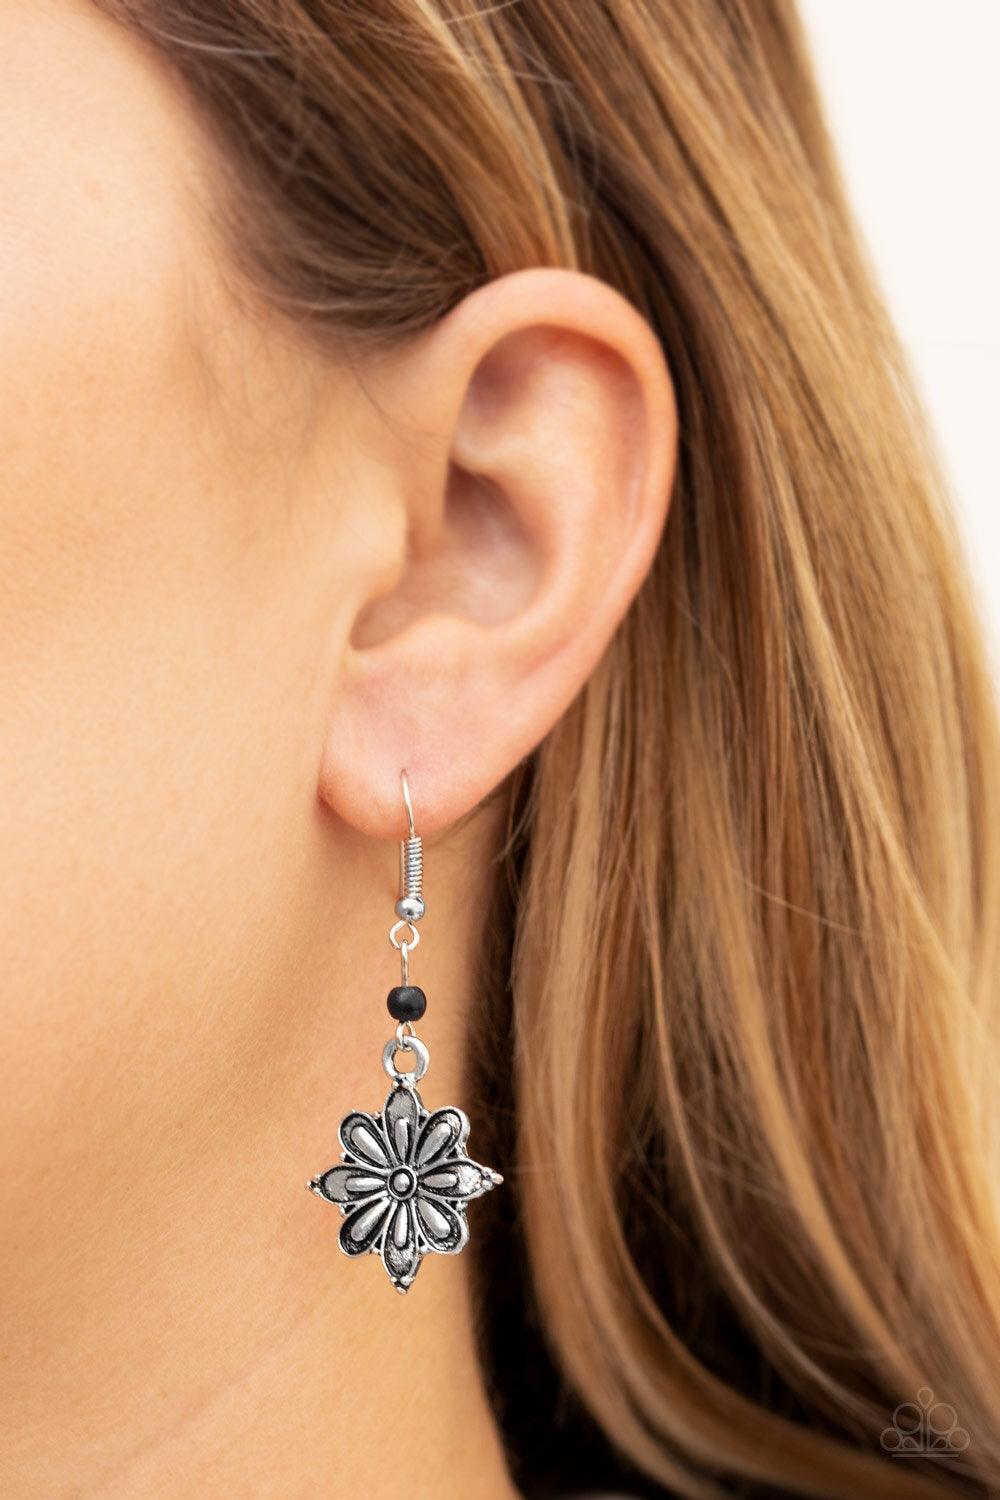 CACTUS BLOSSOM Black Earrings - Jewelry By Bretta - Jewelry by Bretta